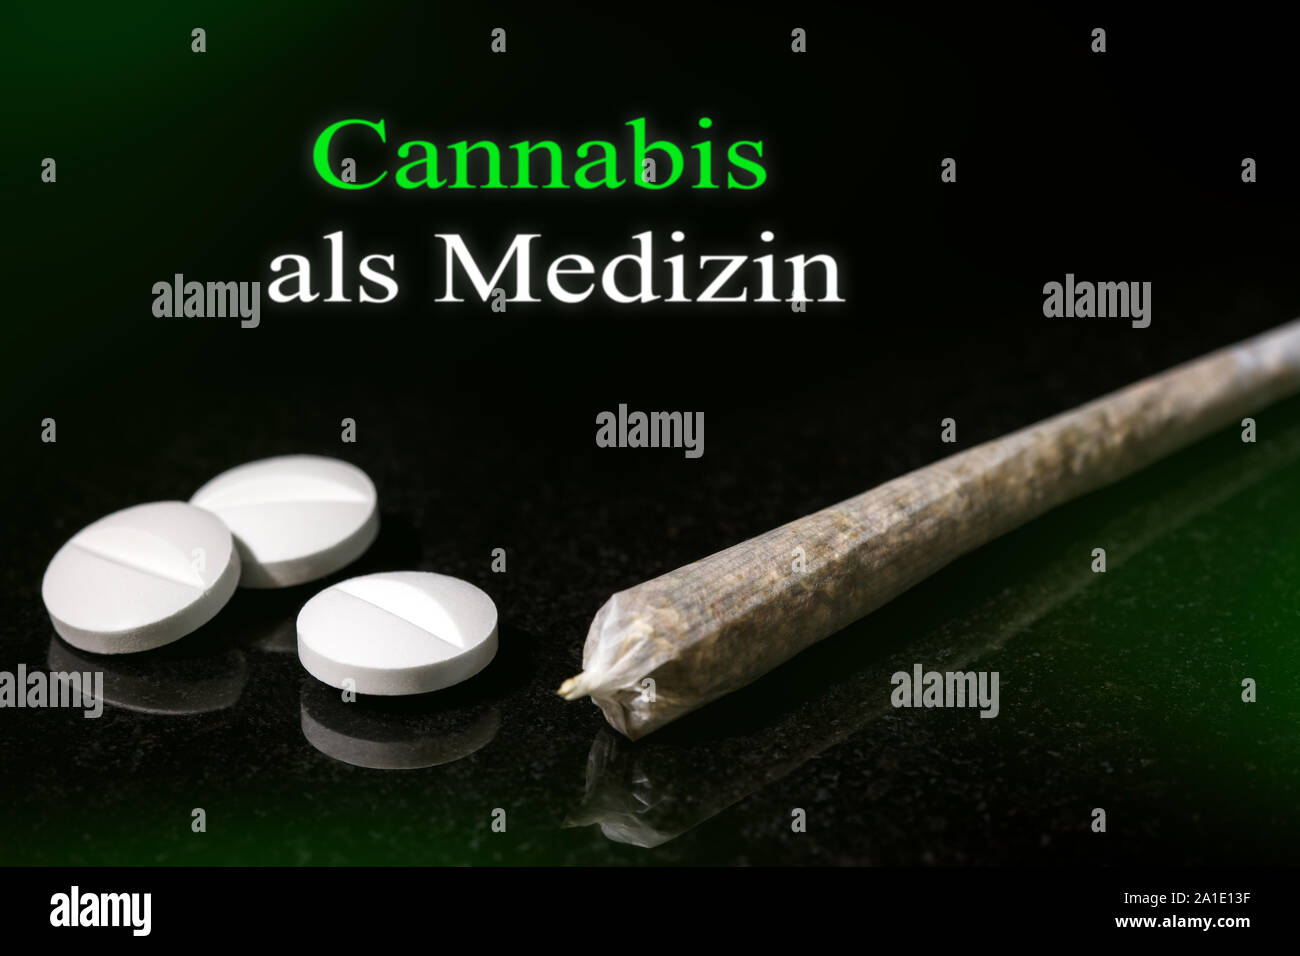 Nouvelle loi en Allemagne, le cannabis est la médecine légale pour les patients, texte allemand Le Cannabis als Medizin, ce qui signifie que le cannabis médical Banque D'Images